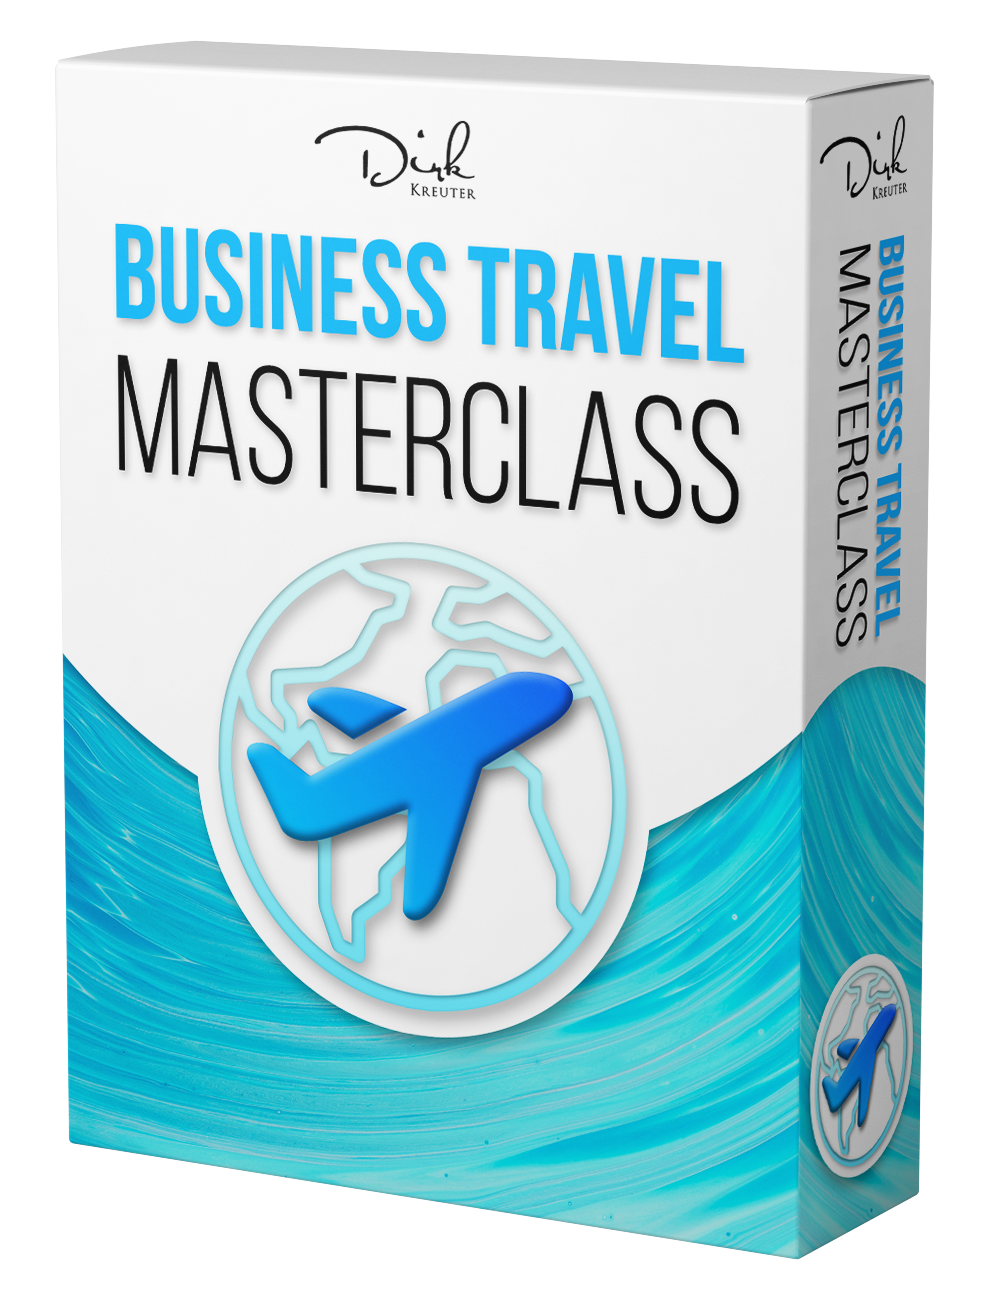 Business Travel Masterclass von dirk kreuter